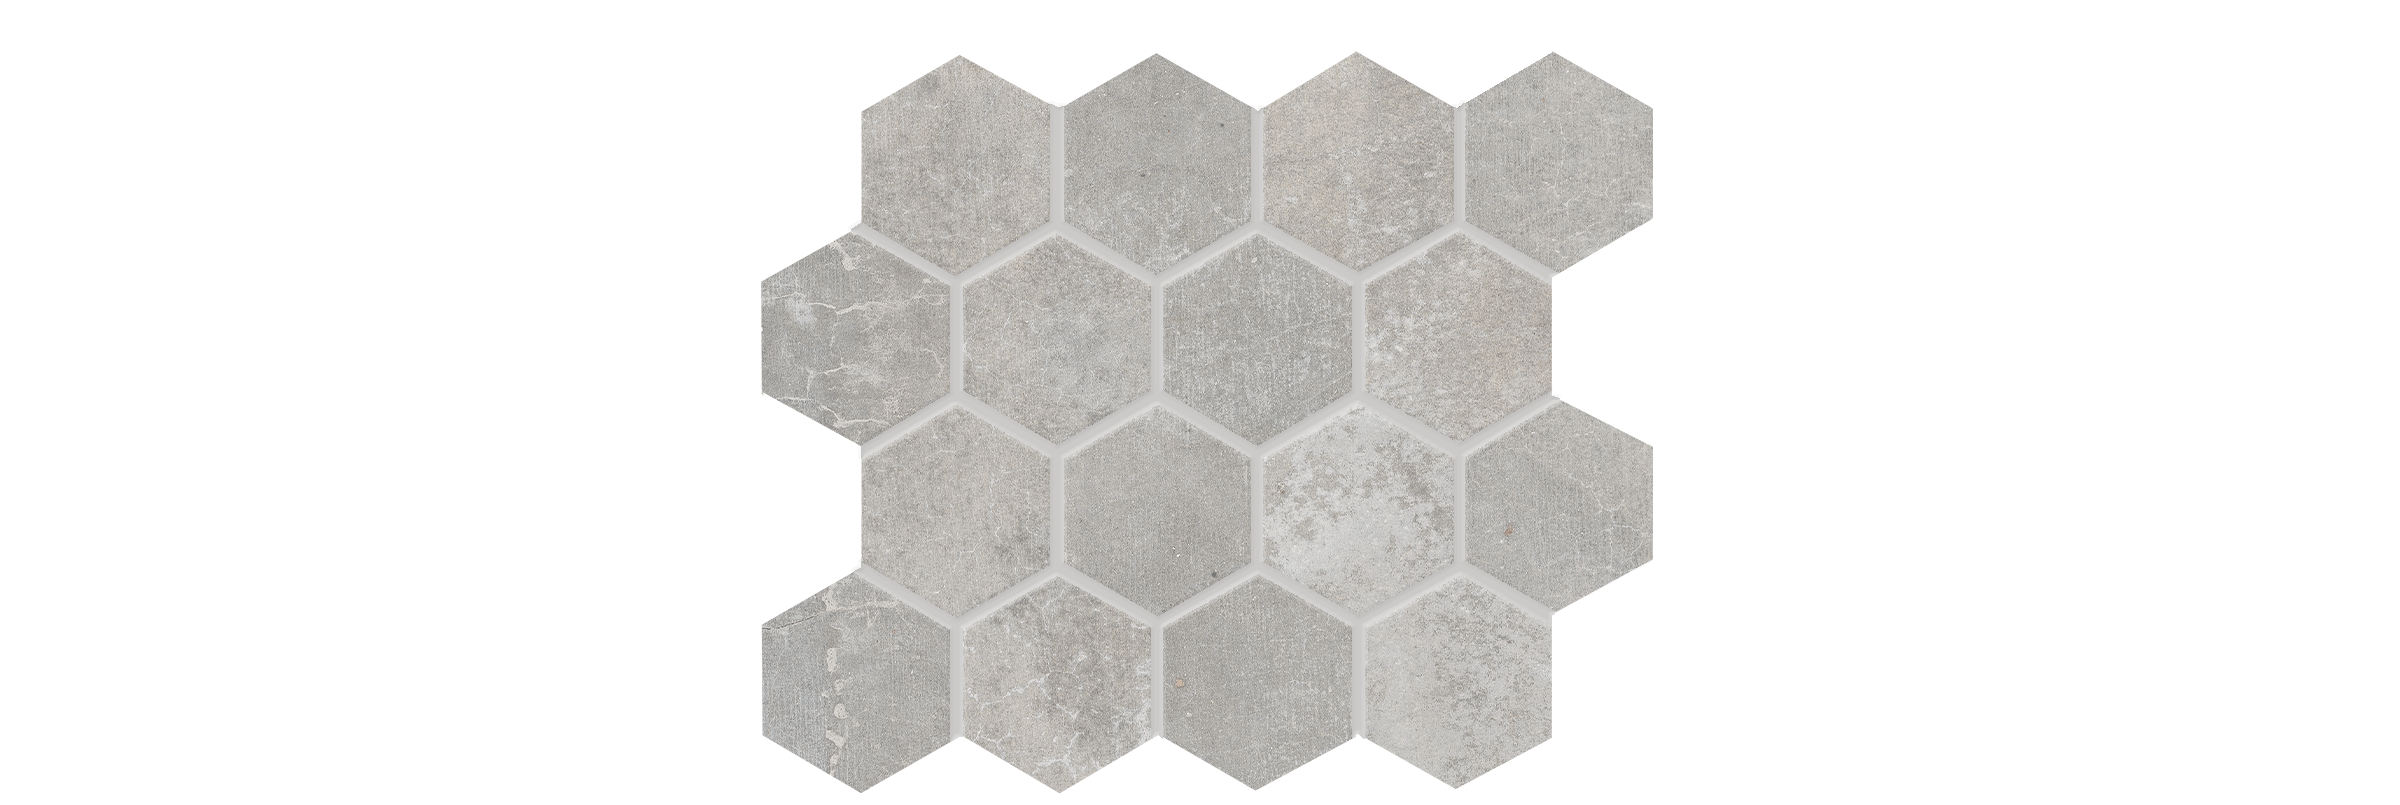 Cementello Light Gray 3x3 Hexagon Matte Porcelain Mosaic